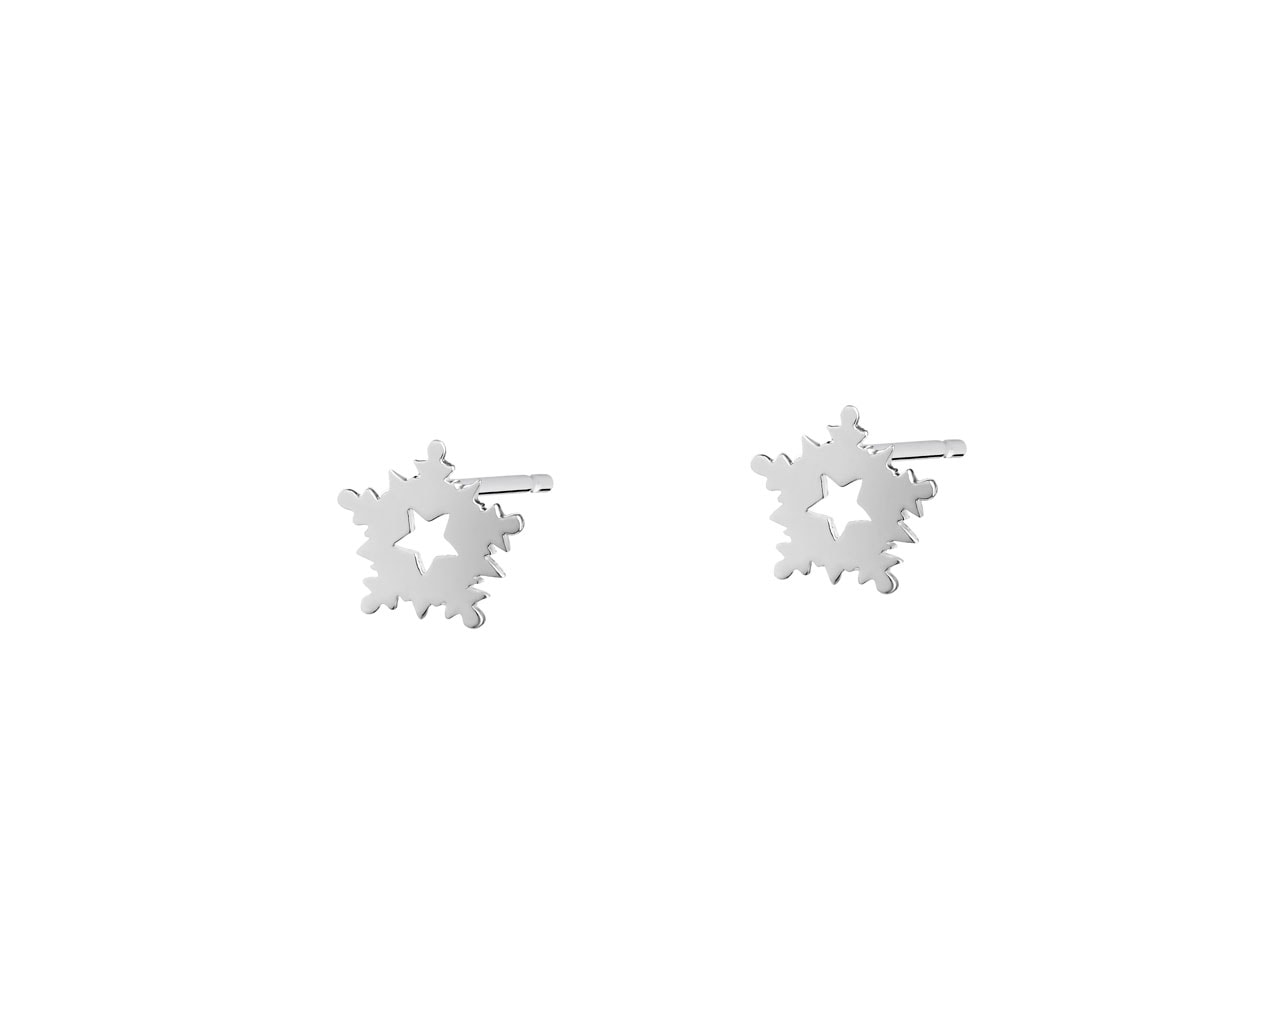 Kolczyki srebrne - śnieżki, gwiazdy